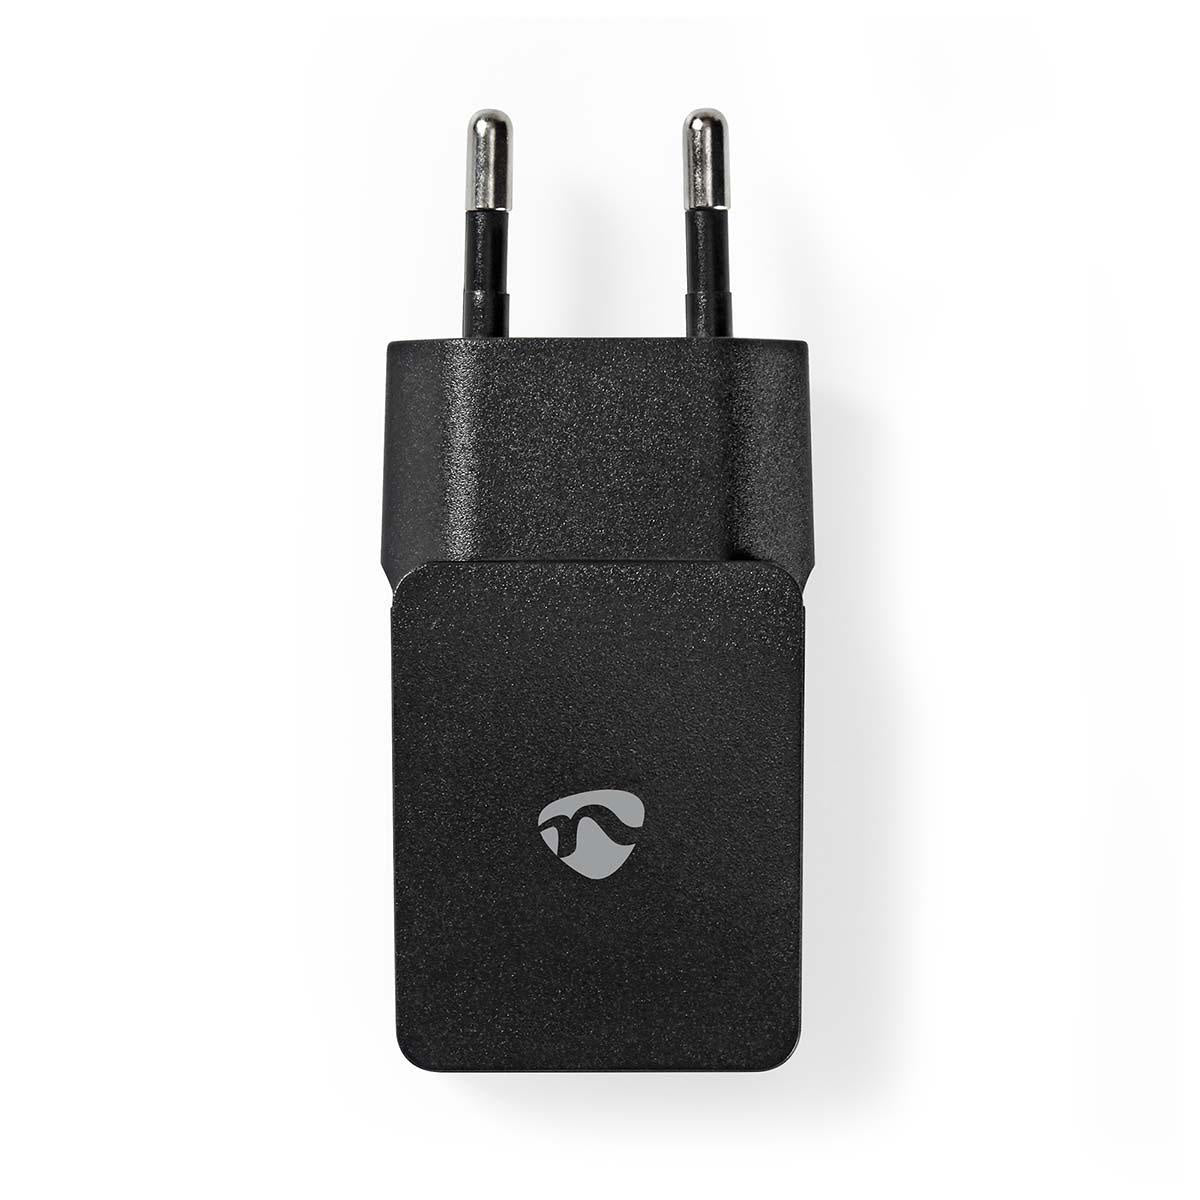 Wandoplader 2,1 A 1 uitgang USB-A Zwart - alarmsysteemexpert.nl